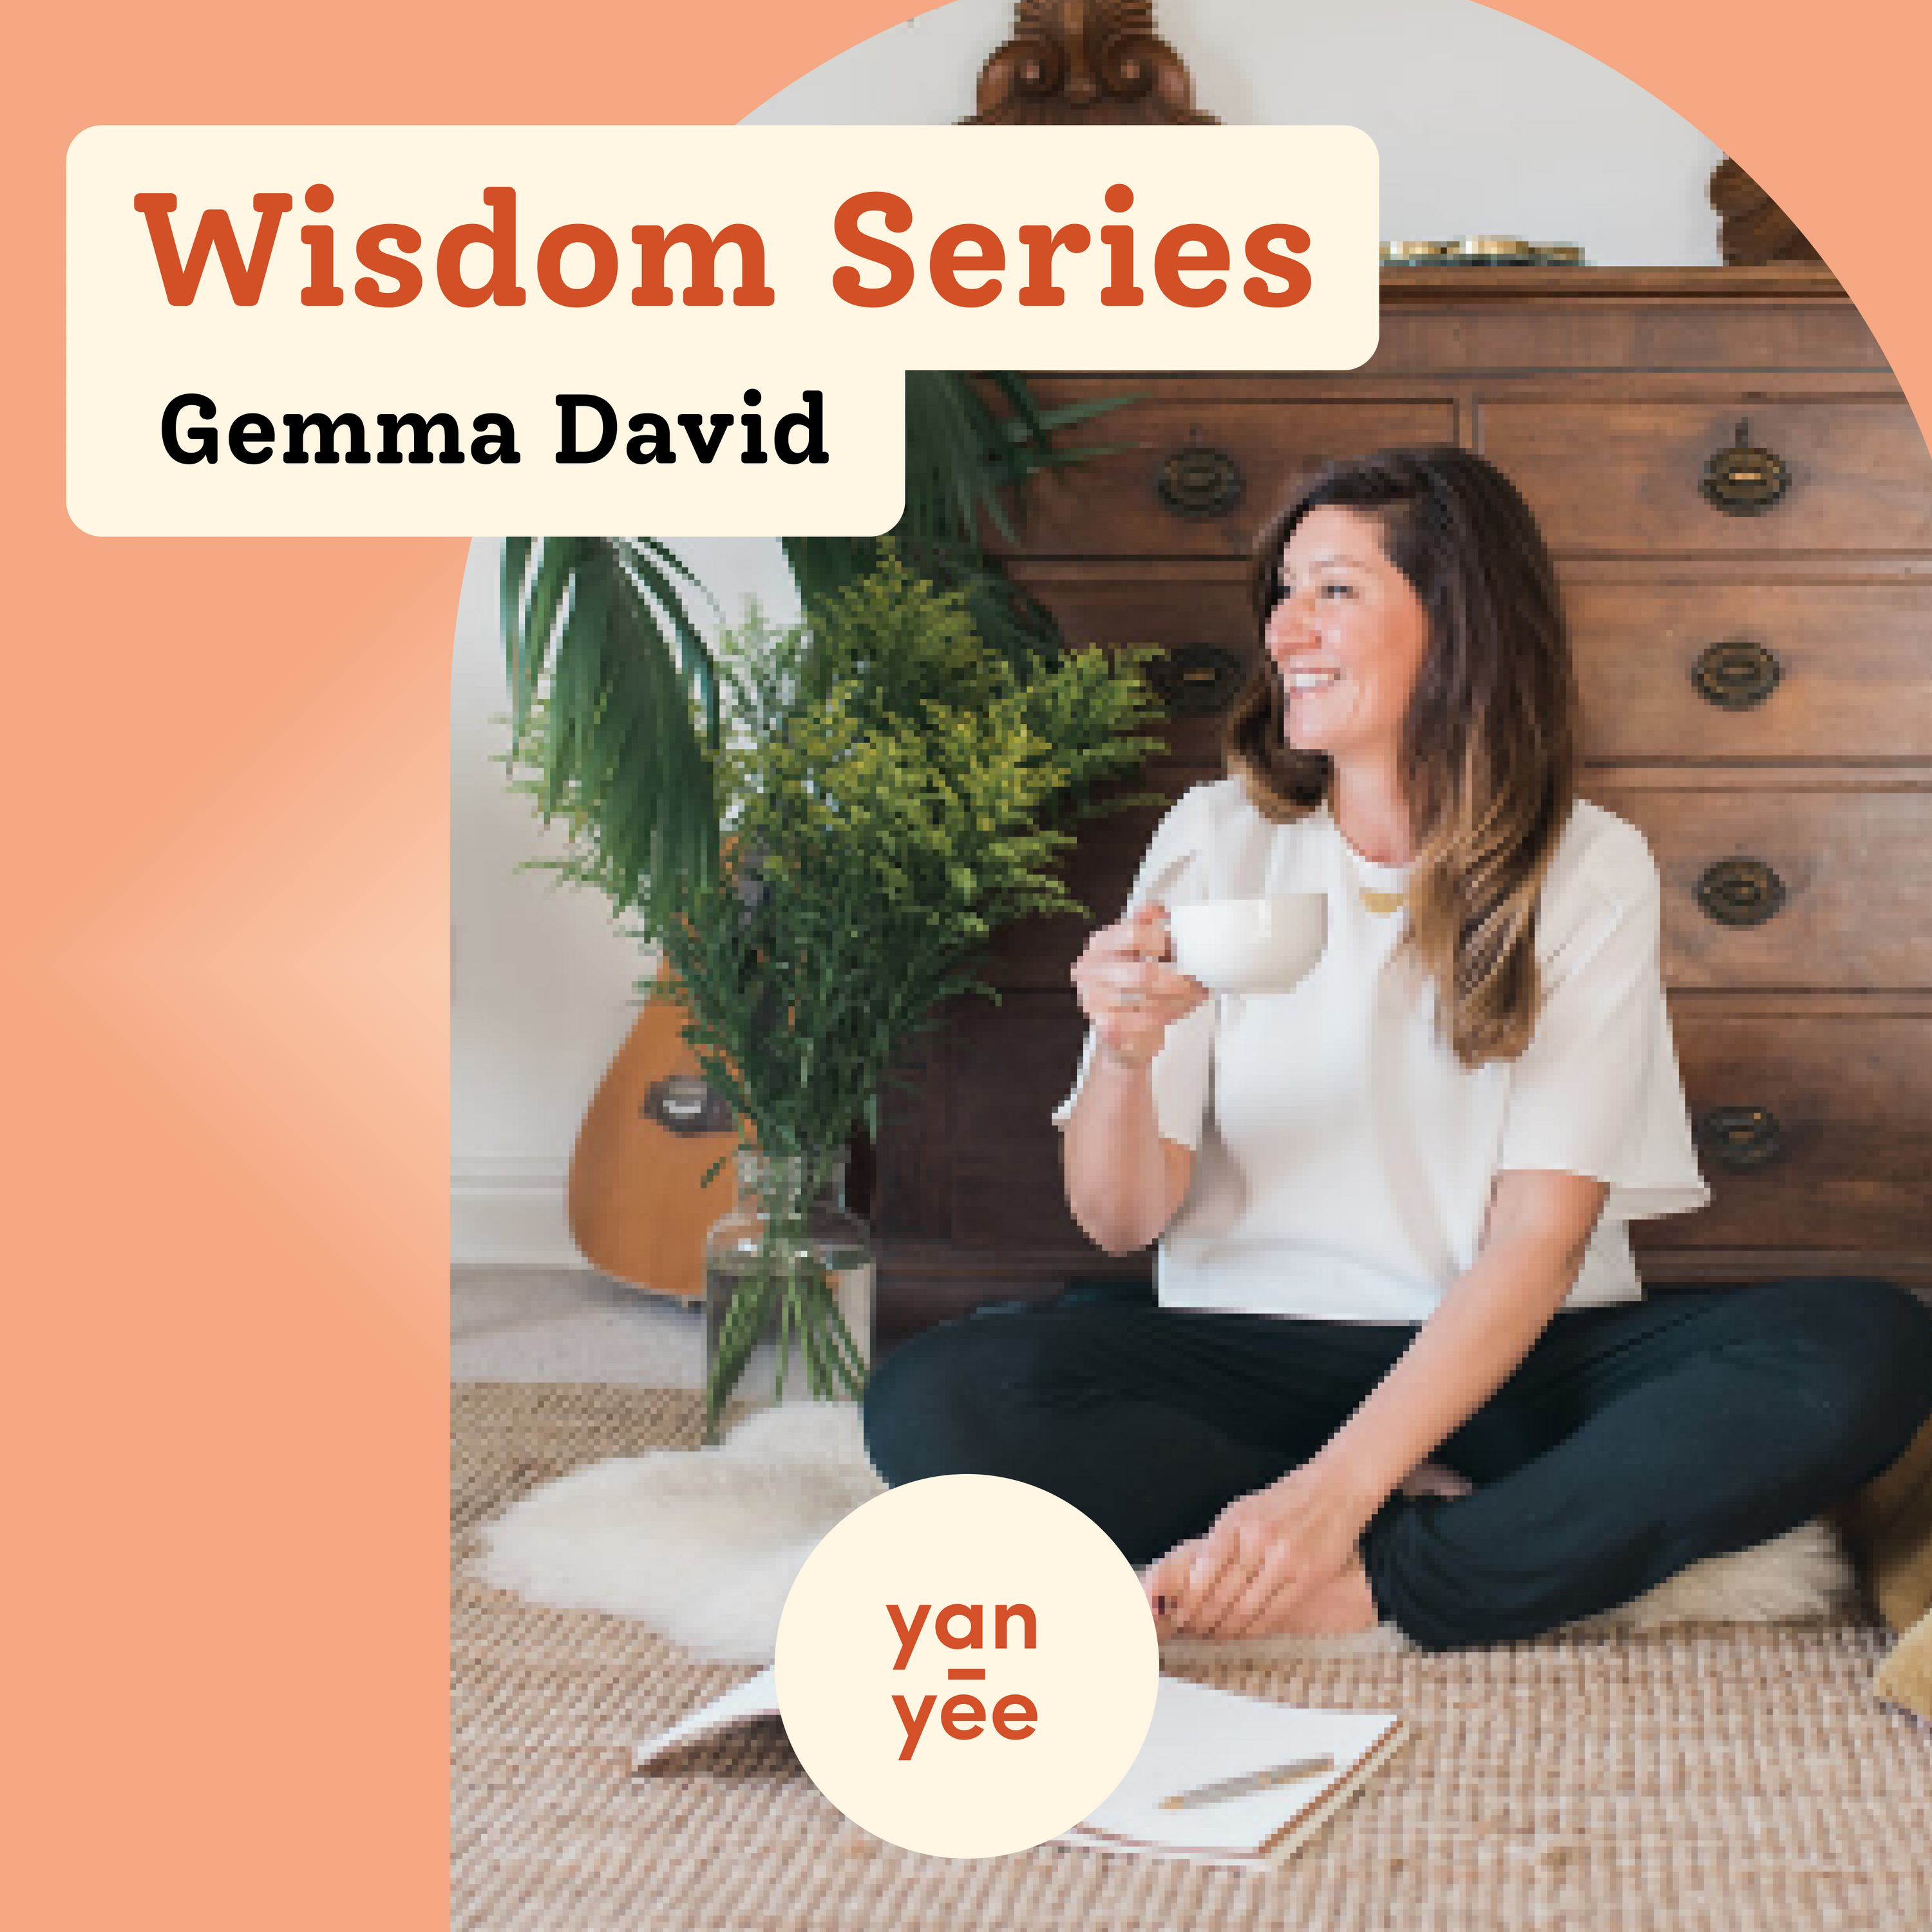 Wisdom Series: In conversation with Gemma David